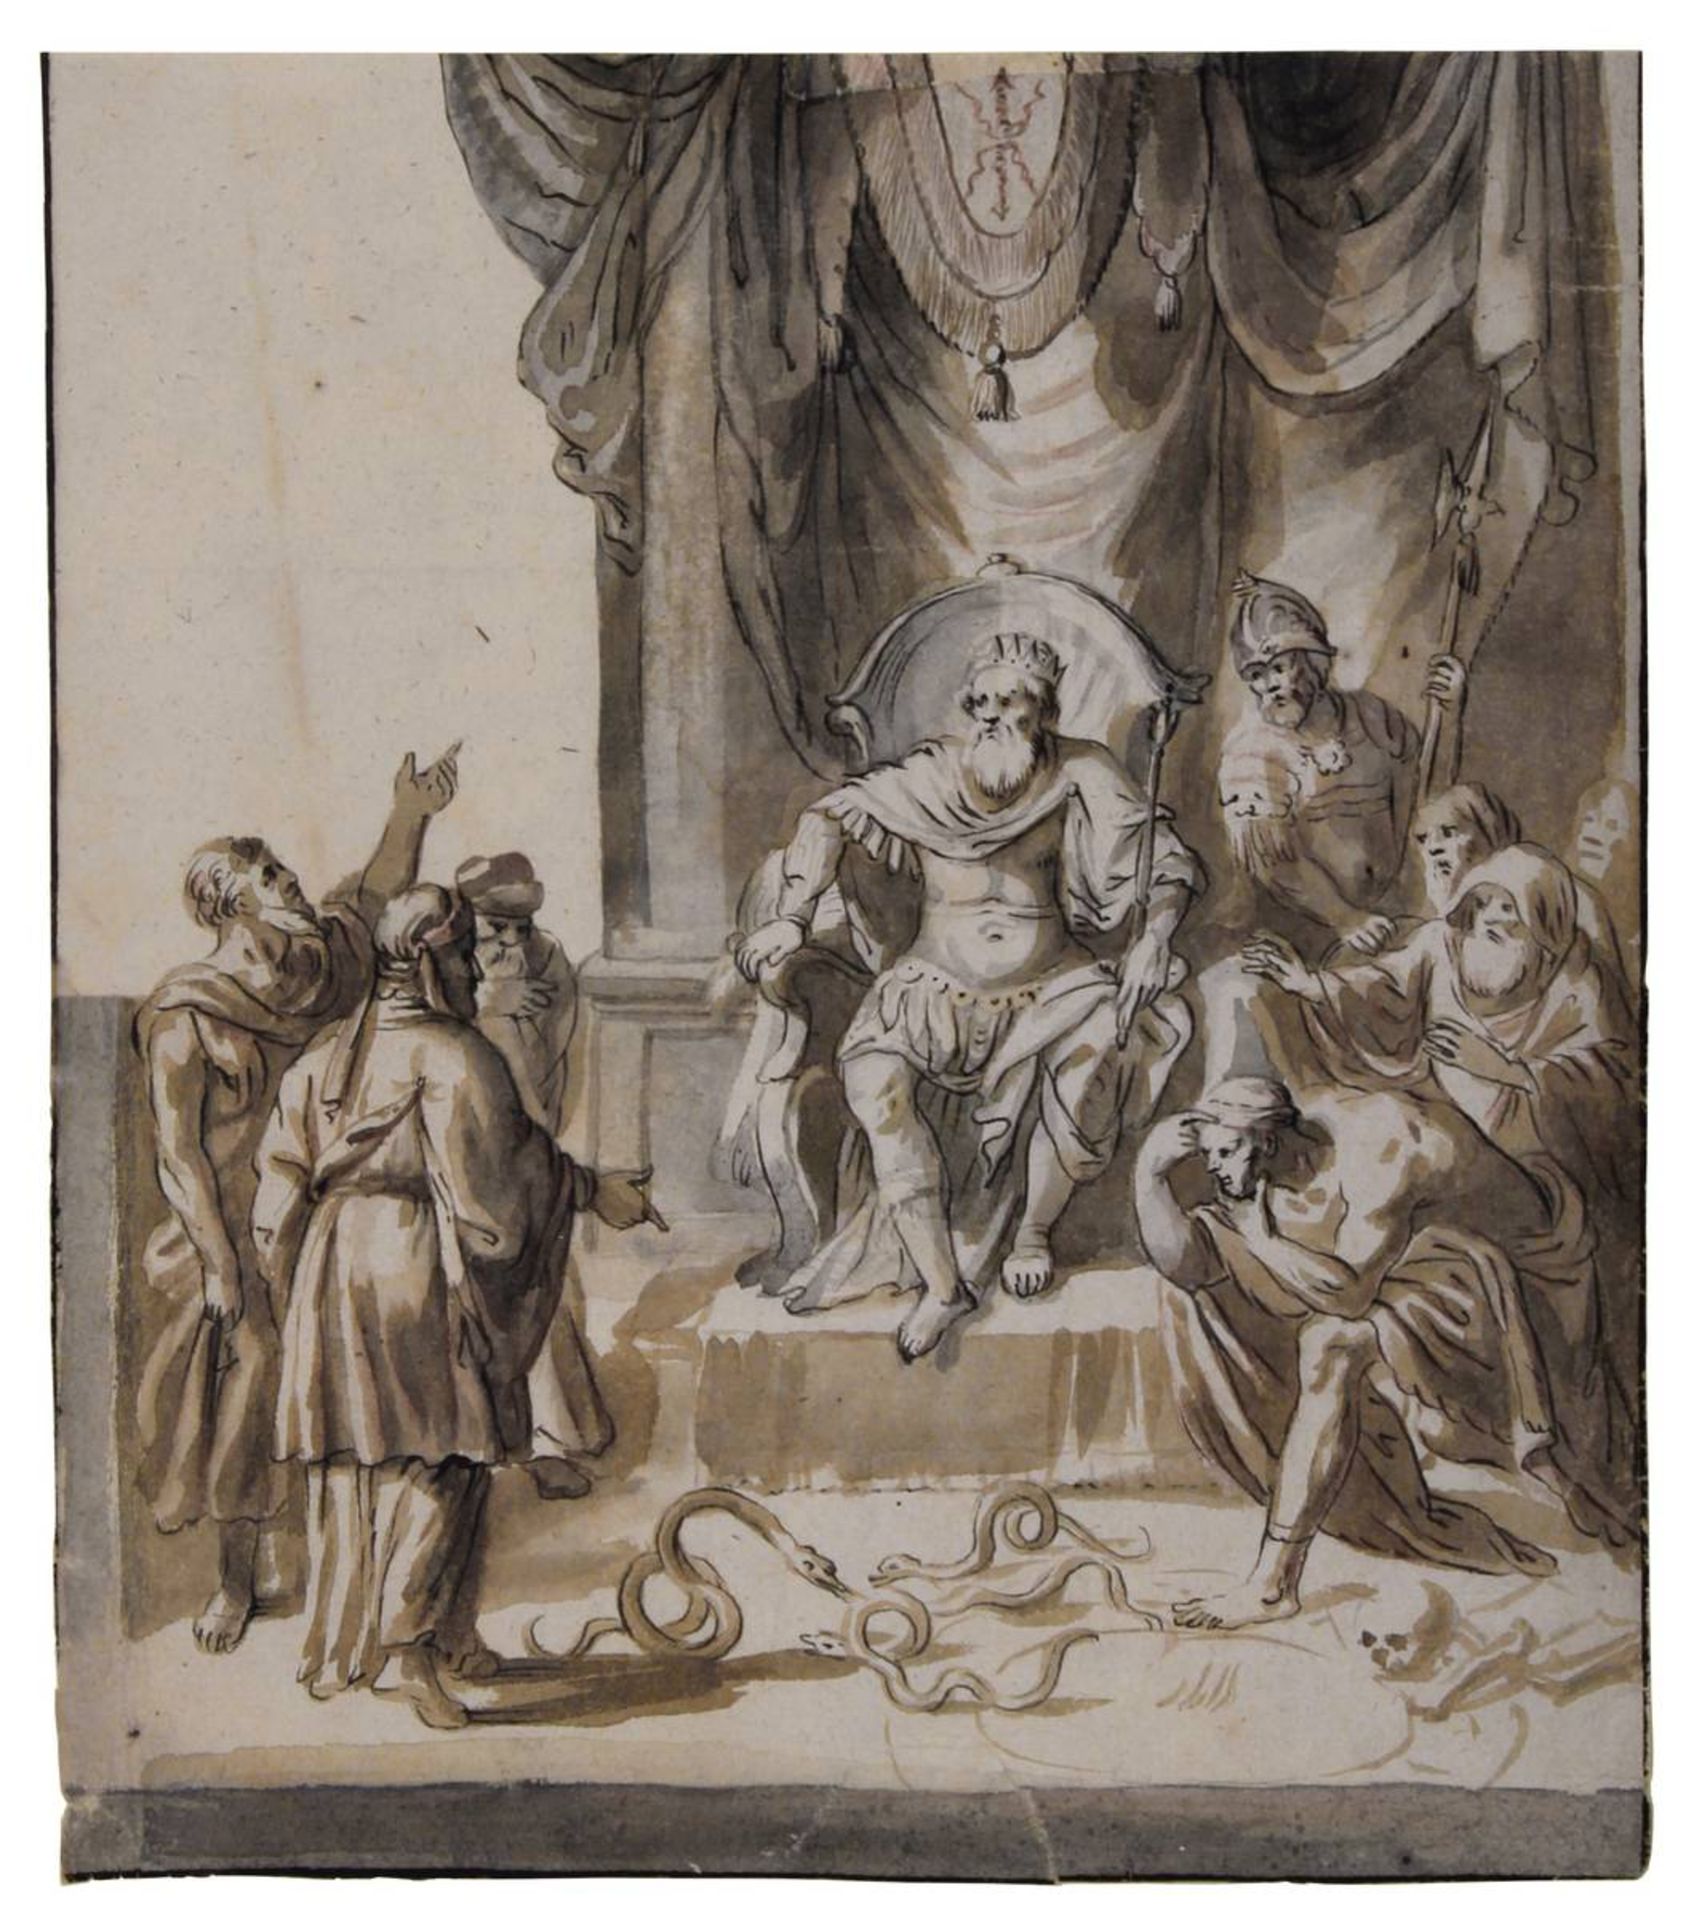 Italienischer Meister 17. Jh., Moses vor dem Pharao, Tuschzeichnung, 23,3 x 20,3 cm, am unteren Rand